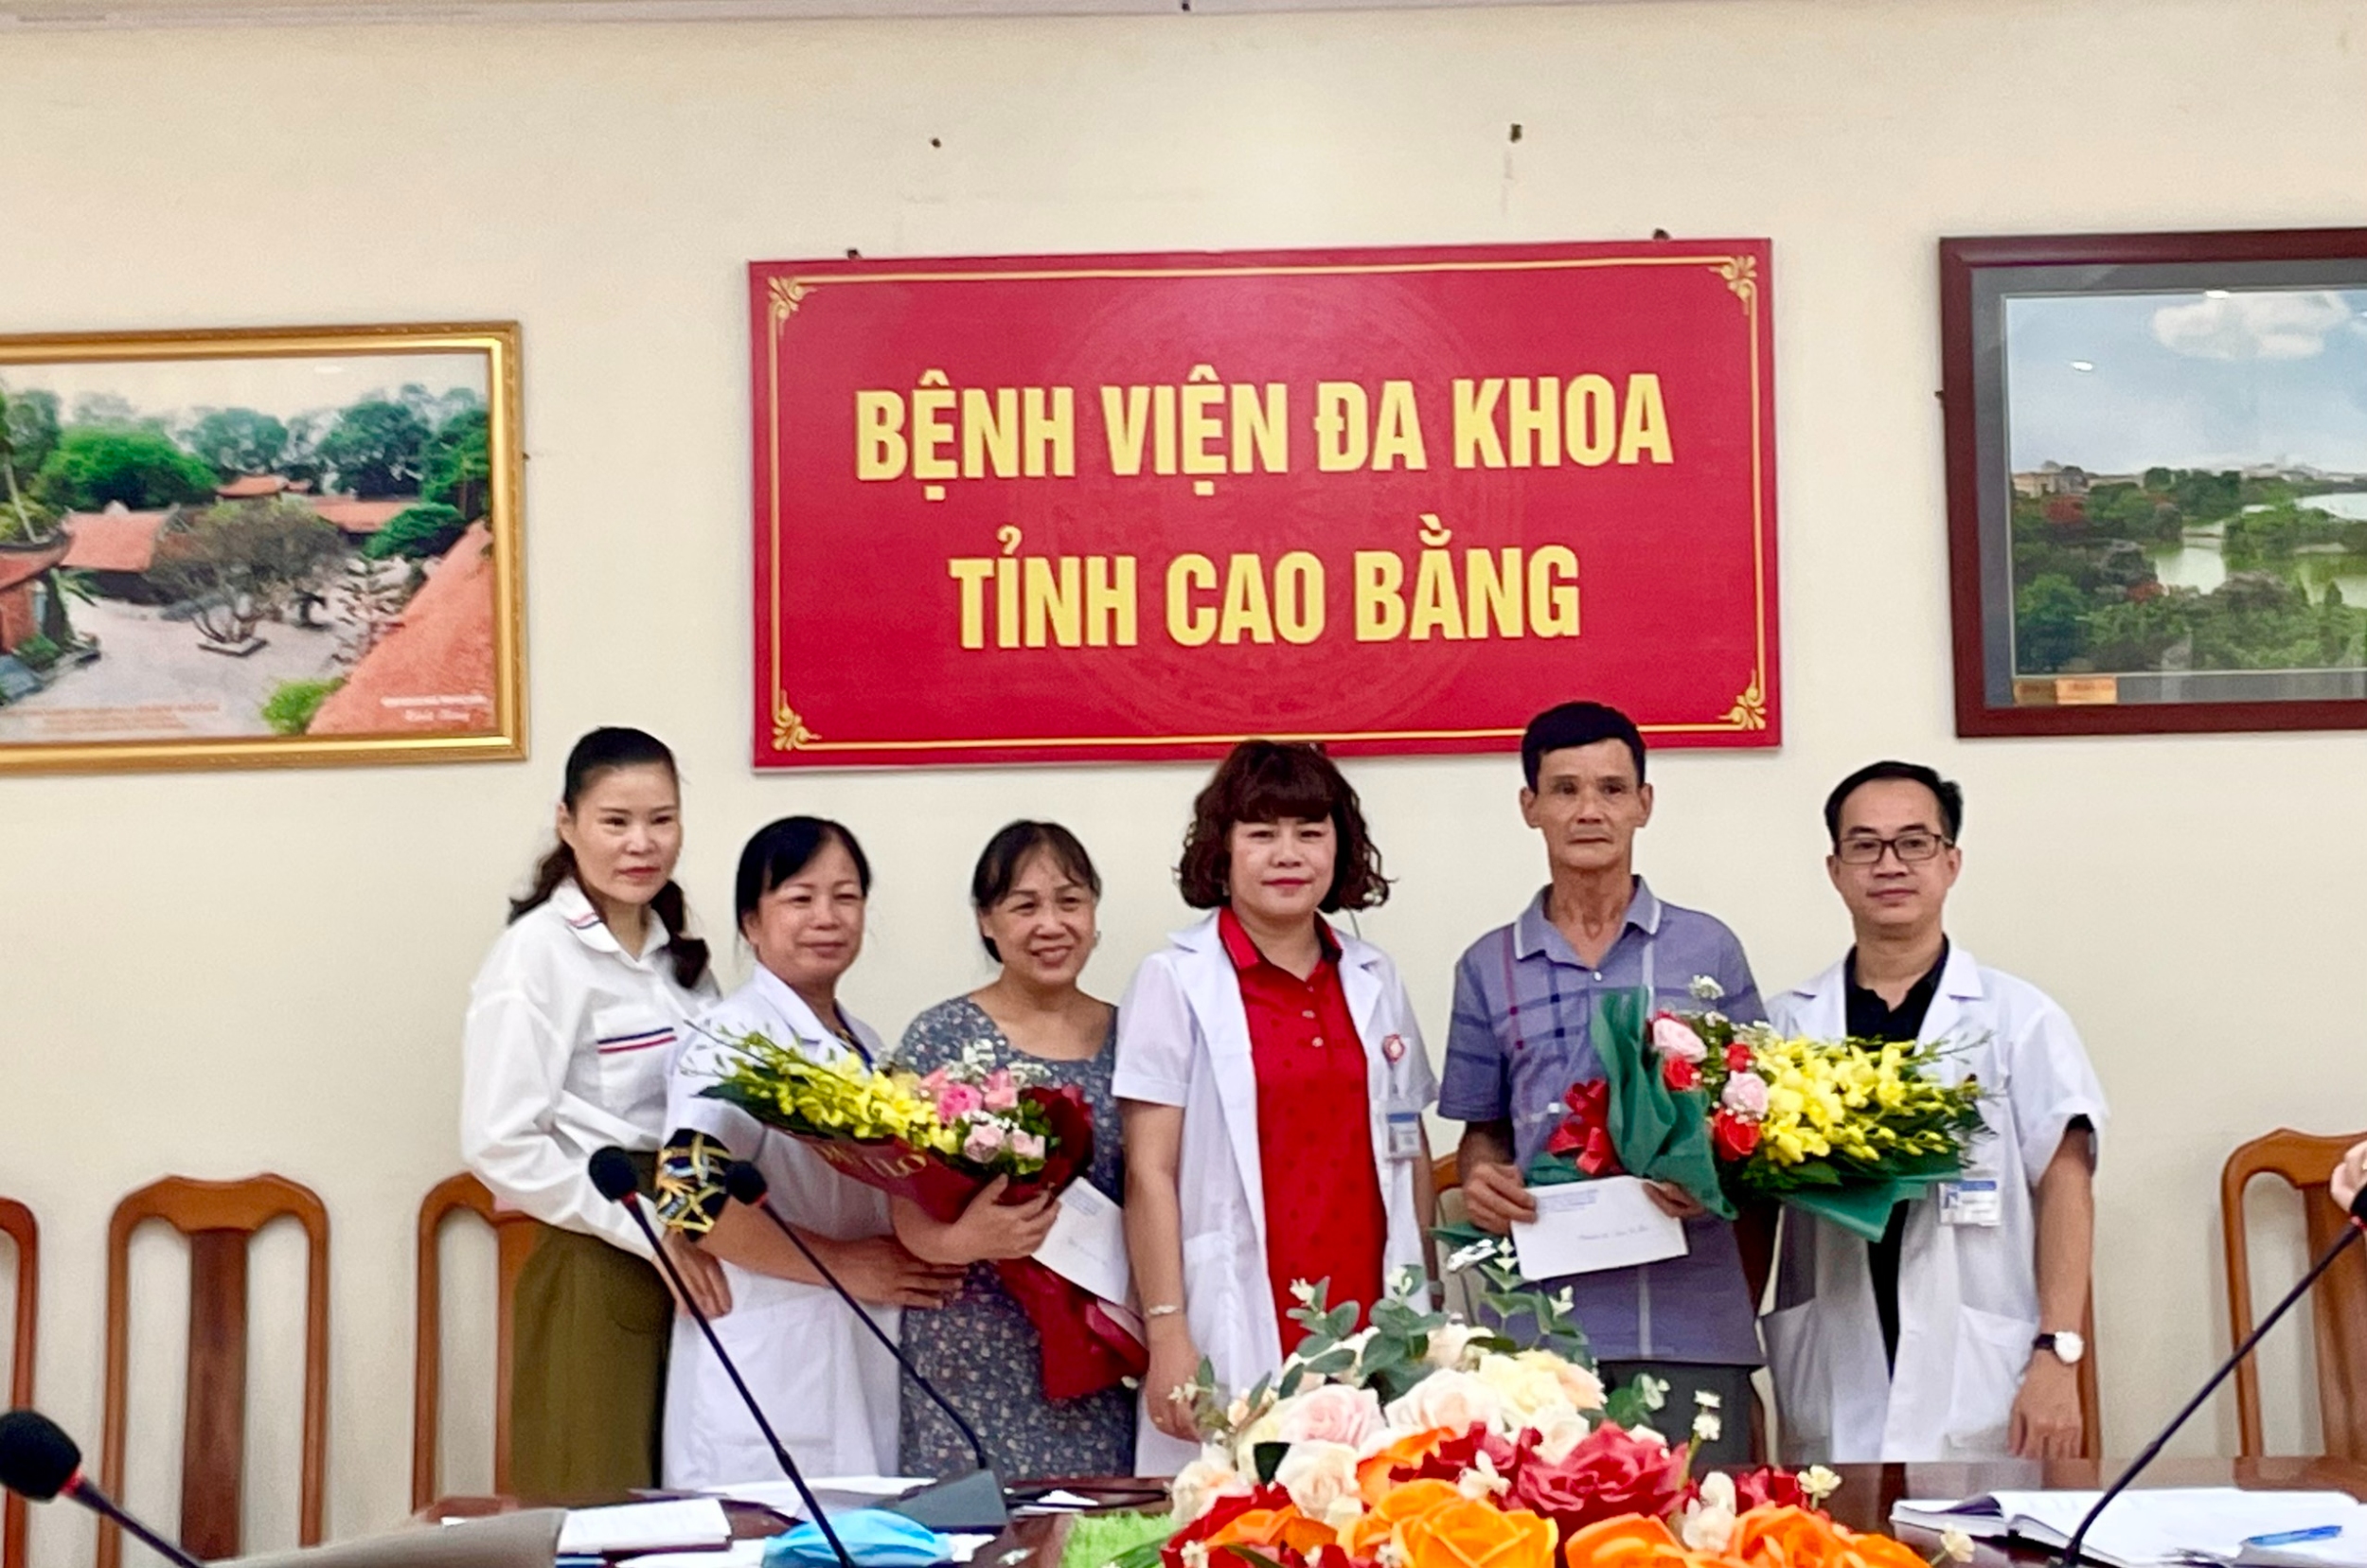 Đồng chí Lý Thị Bạch Như – Bí thư Đảng ủy, Giám đốc bệnh viện tặng hoa chúc mừng các viên chức về nghỉ hưu theo chế độ